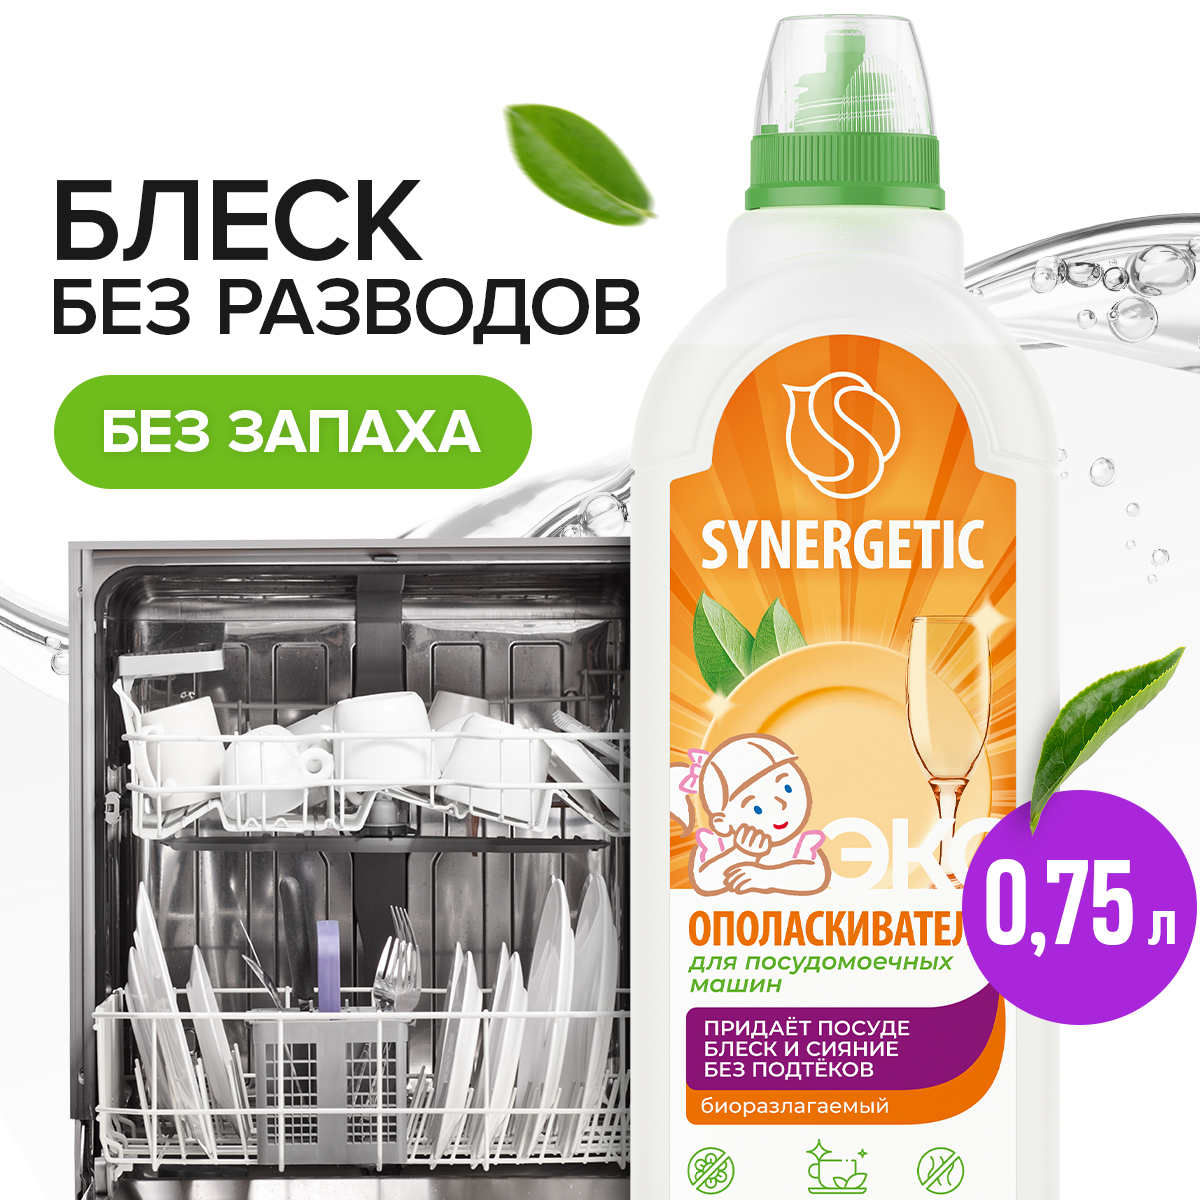 Ополаскиватель для посудомоечных машин SYNERGETIC, 0,75 л - купить в Мегамаркет, цена на Мегамаркет